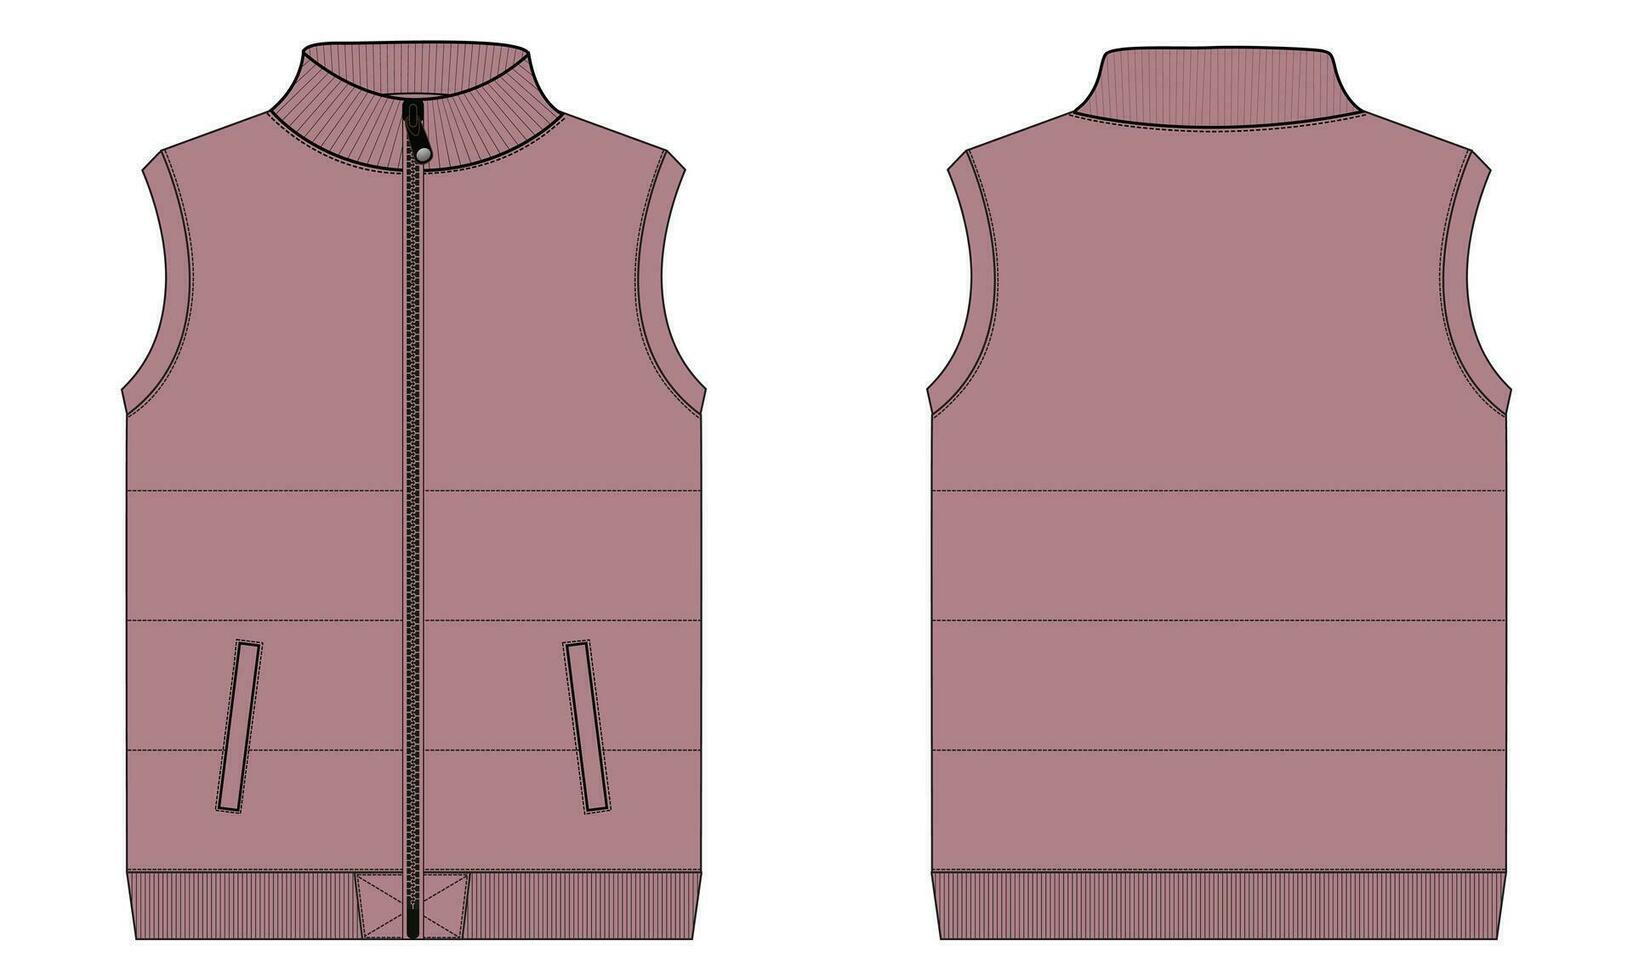 Sleeveless vest vector illustration template for men's.